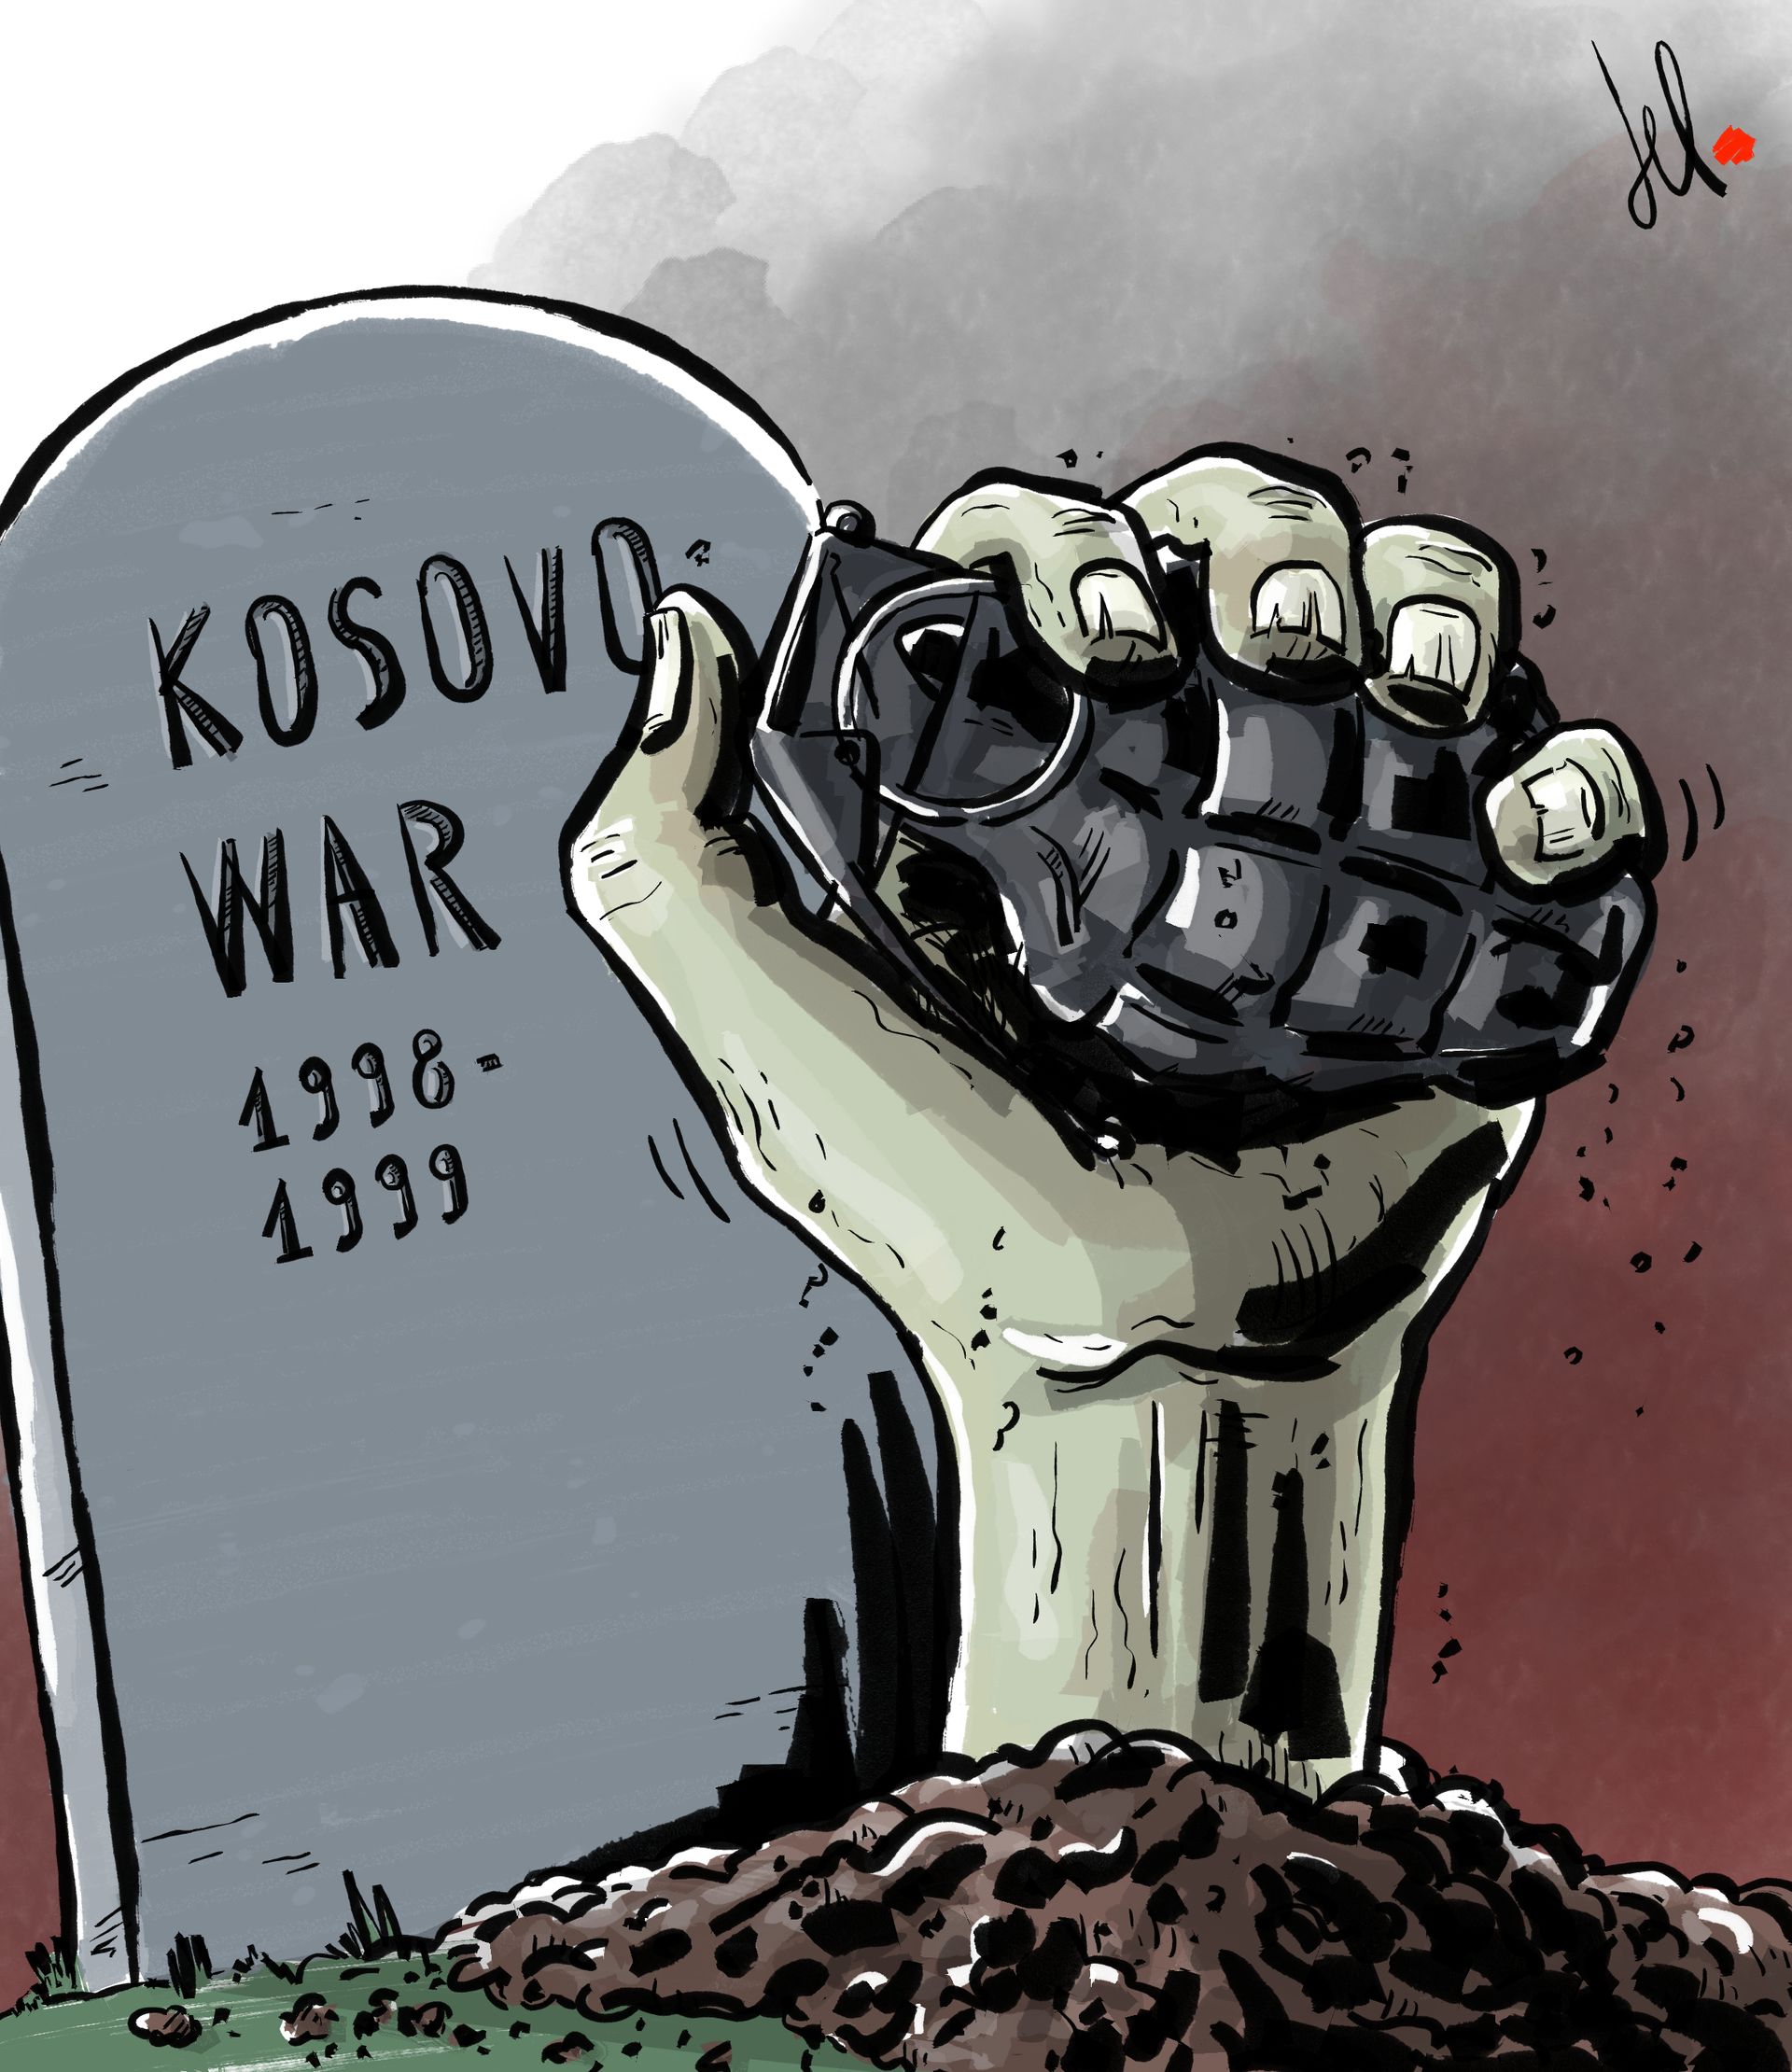 The return of the Kosovo war - Del Rosso